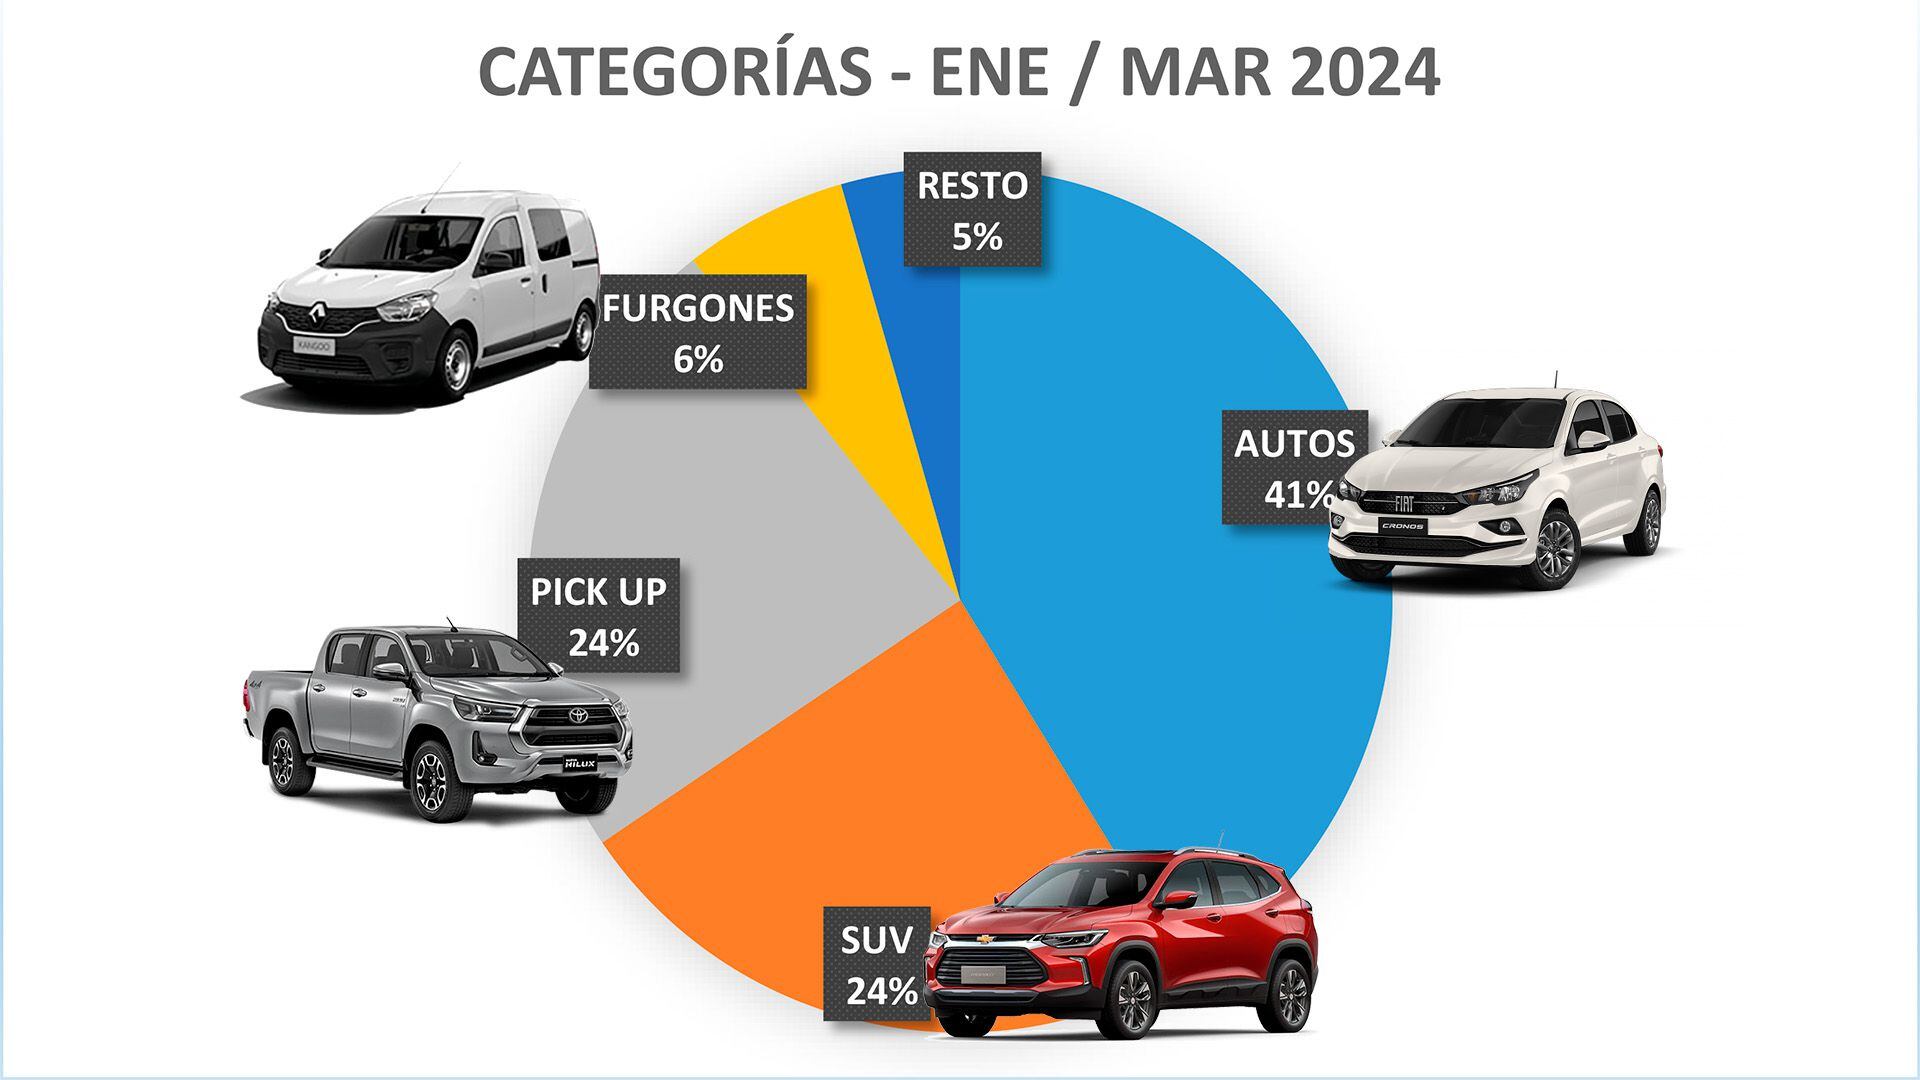 Proporción autos marzo